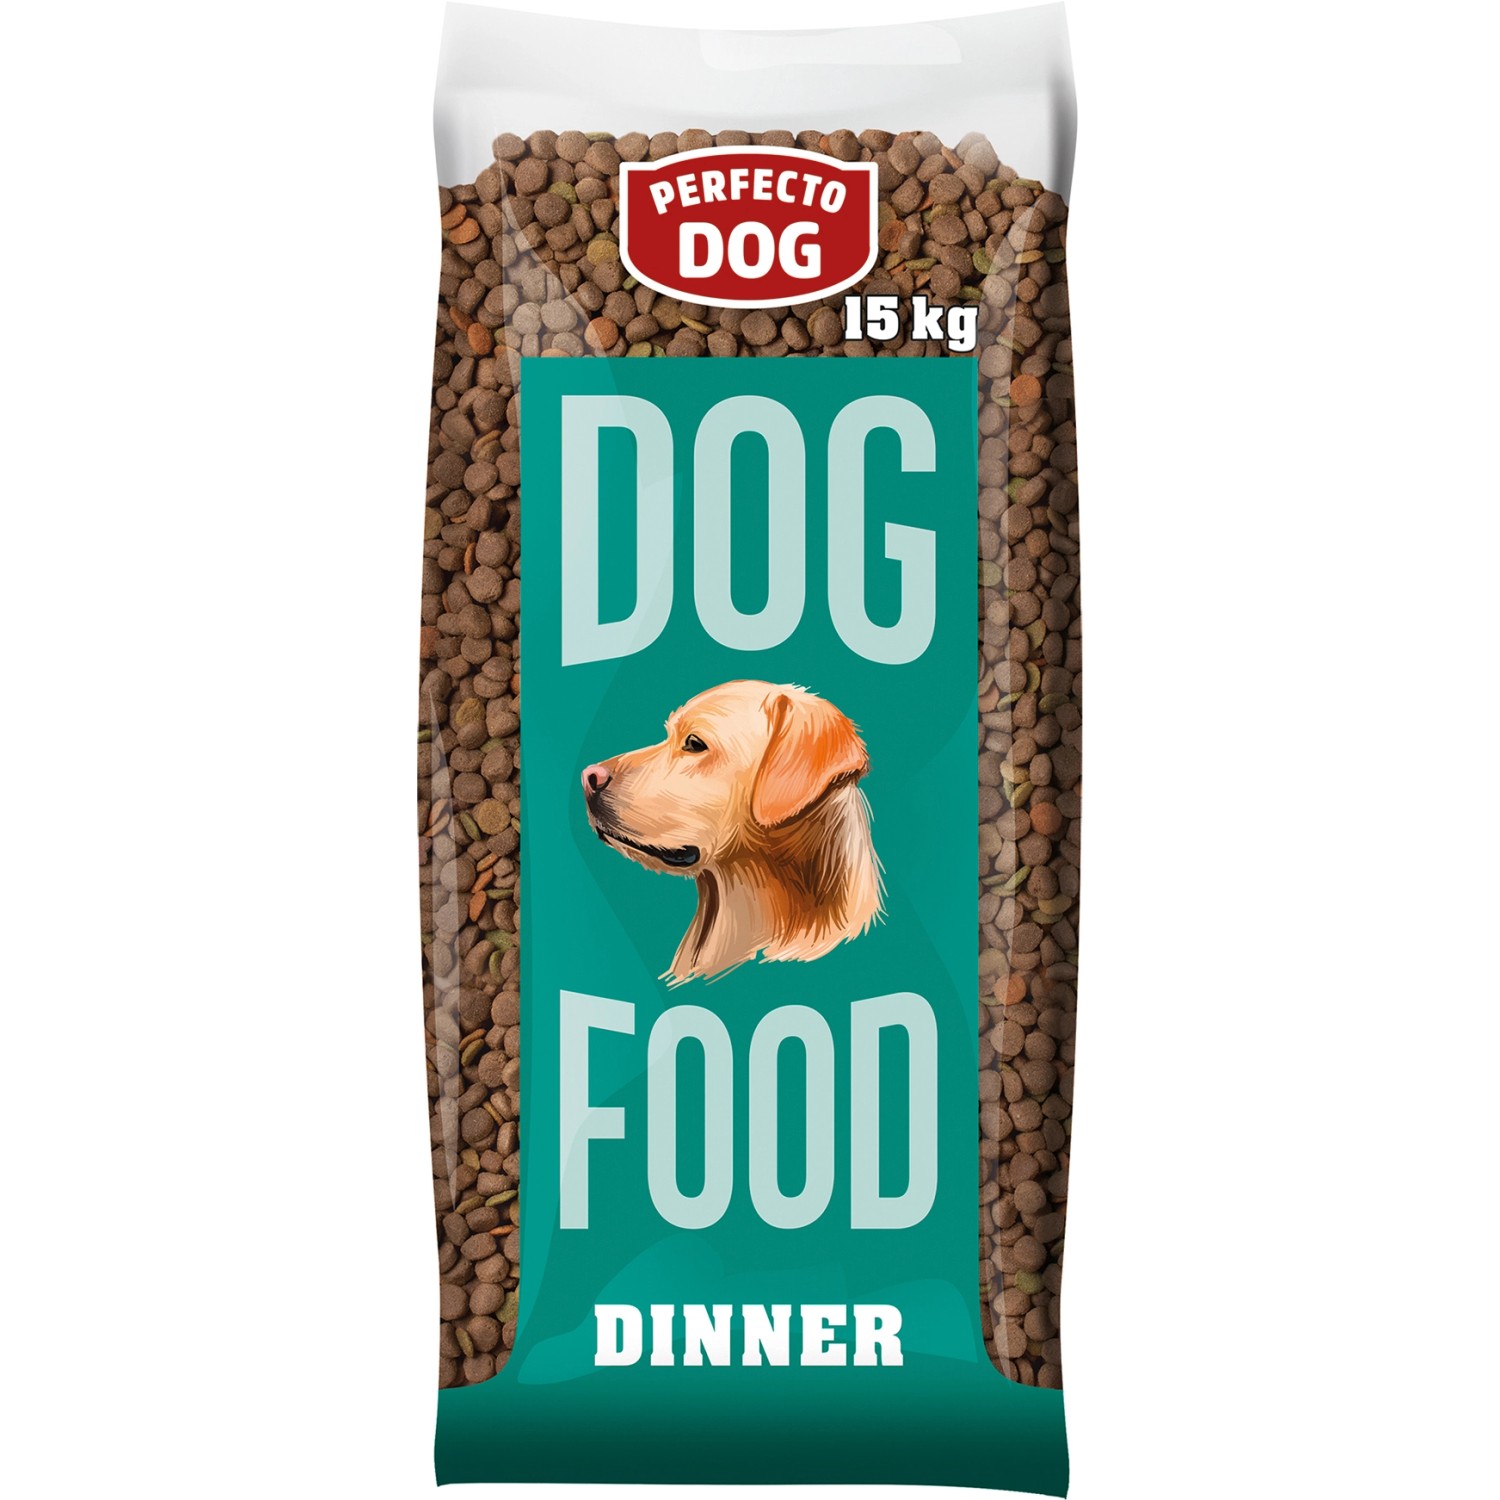 Perfecto Dog Hunde-Trockenfutter Dinner 15 kg